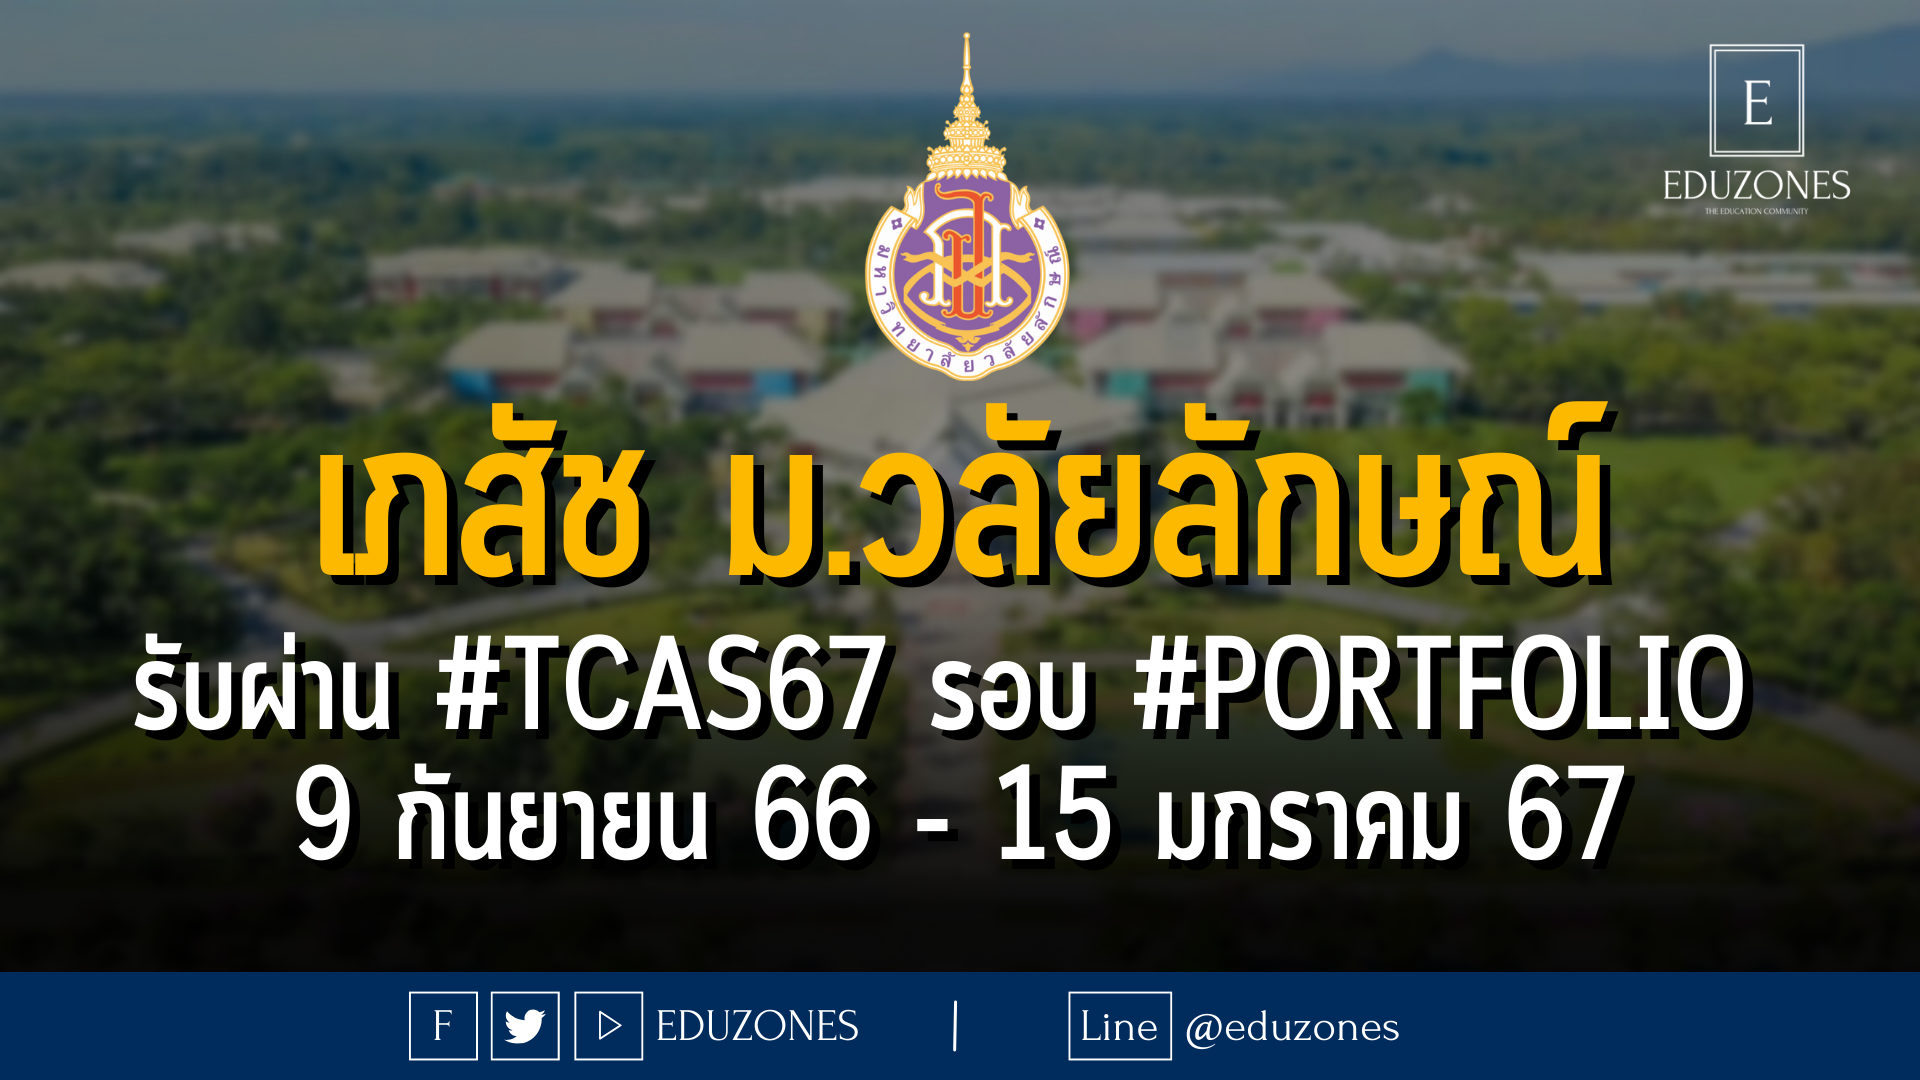 สำนักวิชาเภสัชศาสตร์ มหาวิทยาลัยวลัยลักษณ์ รับผ่าน #TCAS67 รอบ #PORTFOLIO : สมัคร 9 กันยายน 66 - 15 มกราคม 67